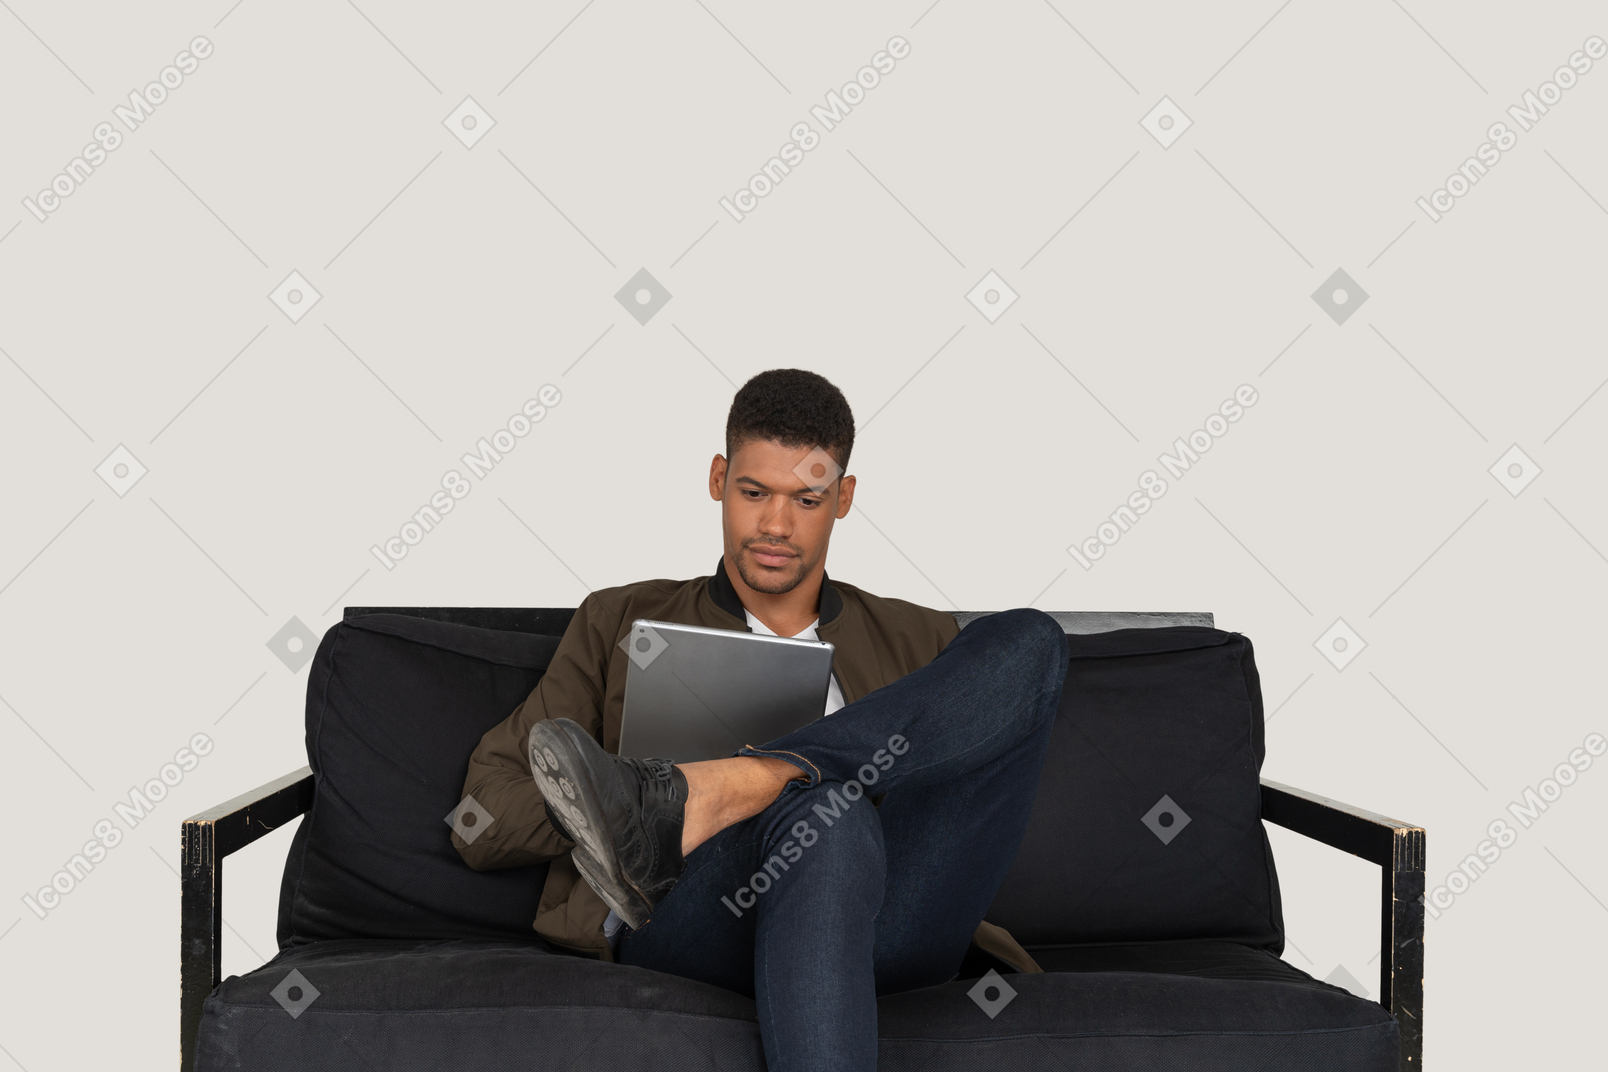 Vorderansicht eines jungen mannes, der auf einem sofa sitzt, während er ein tablet hält